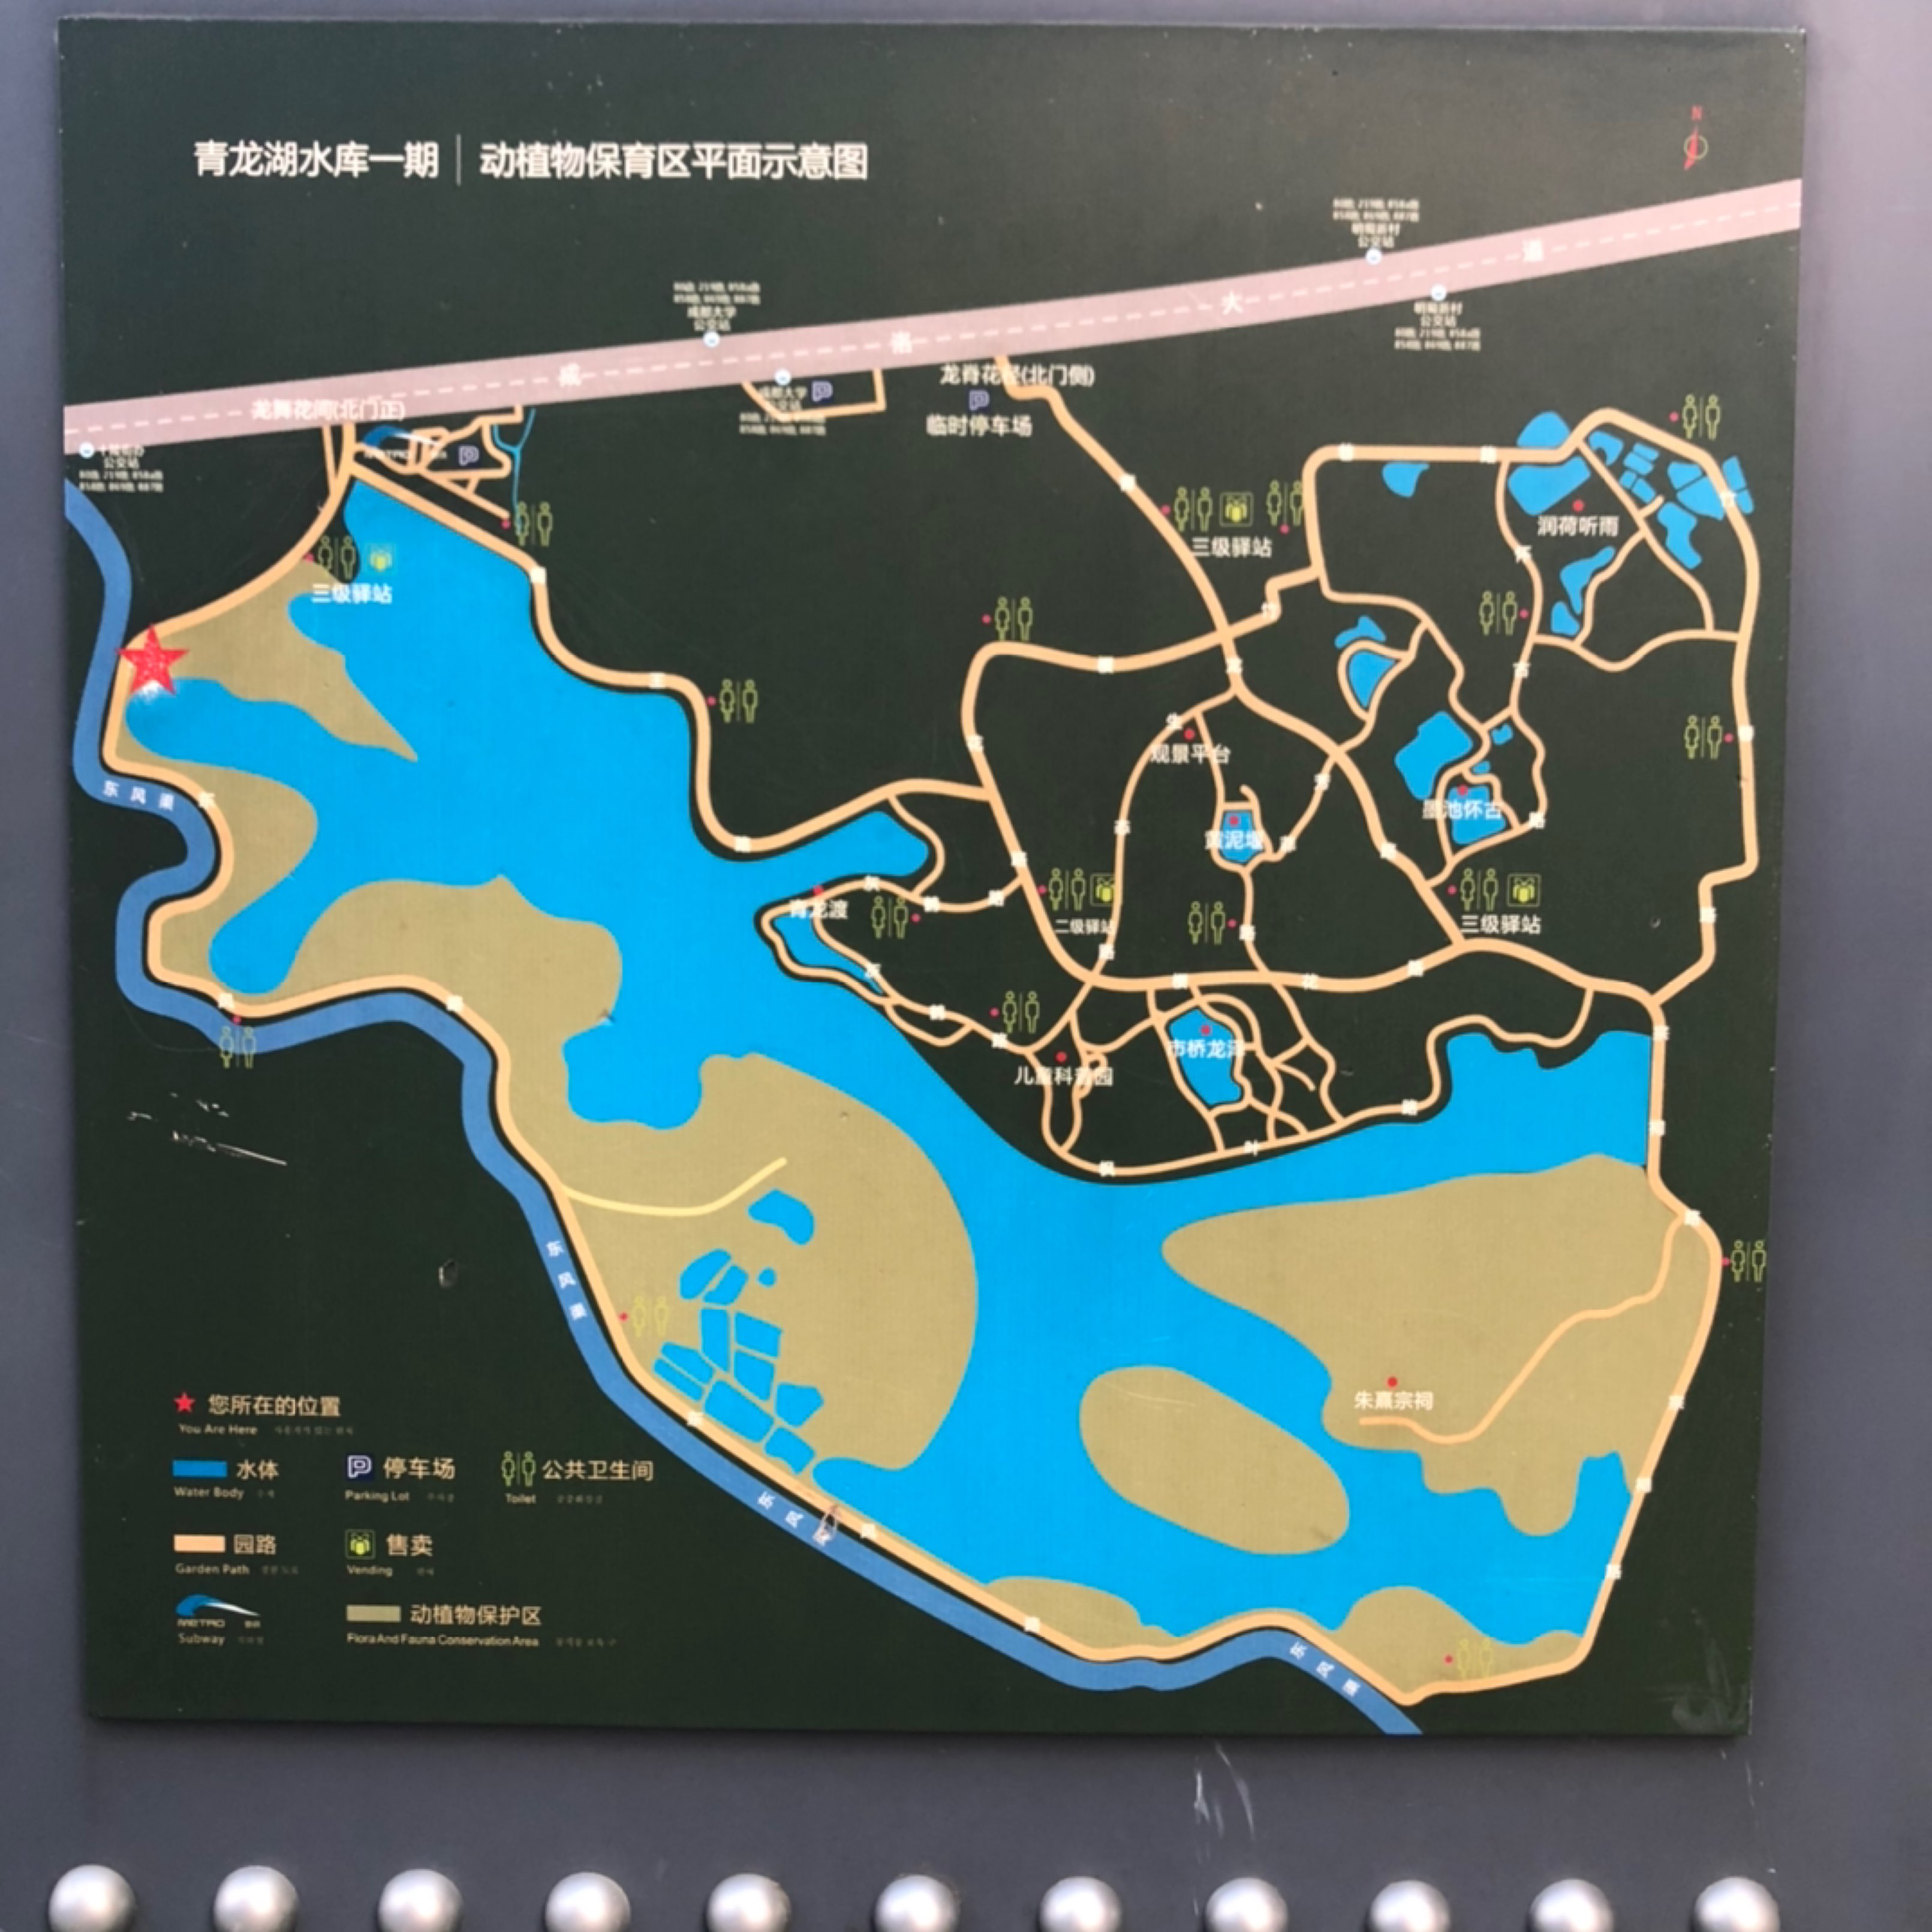 30公里, 35分36秒  完成 环青龙湖湿地公园  开启跑步实况 精彩动态